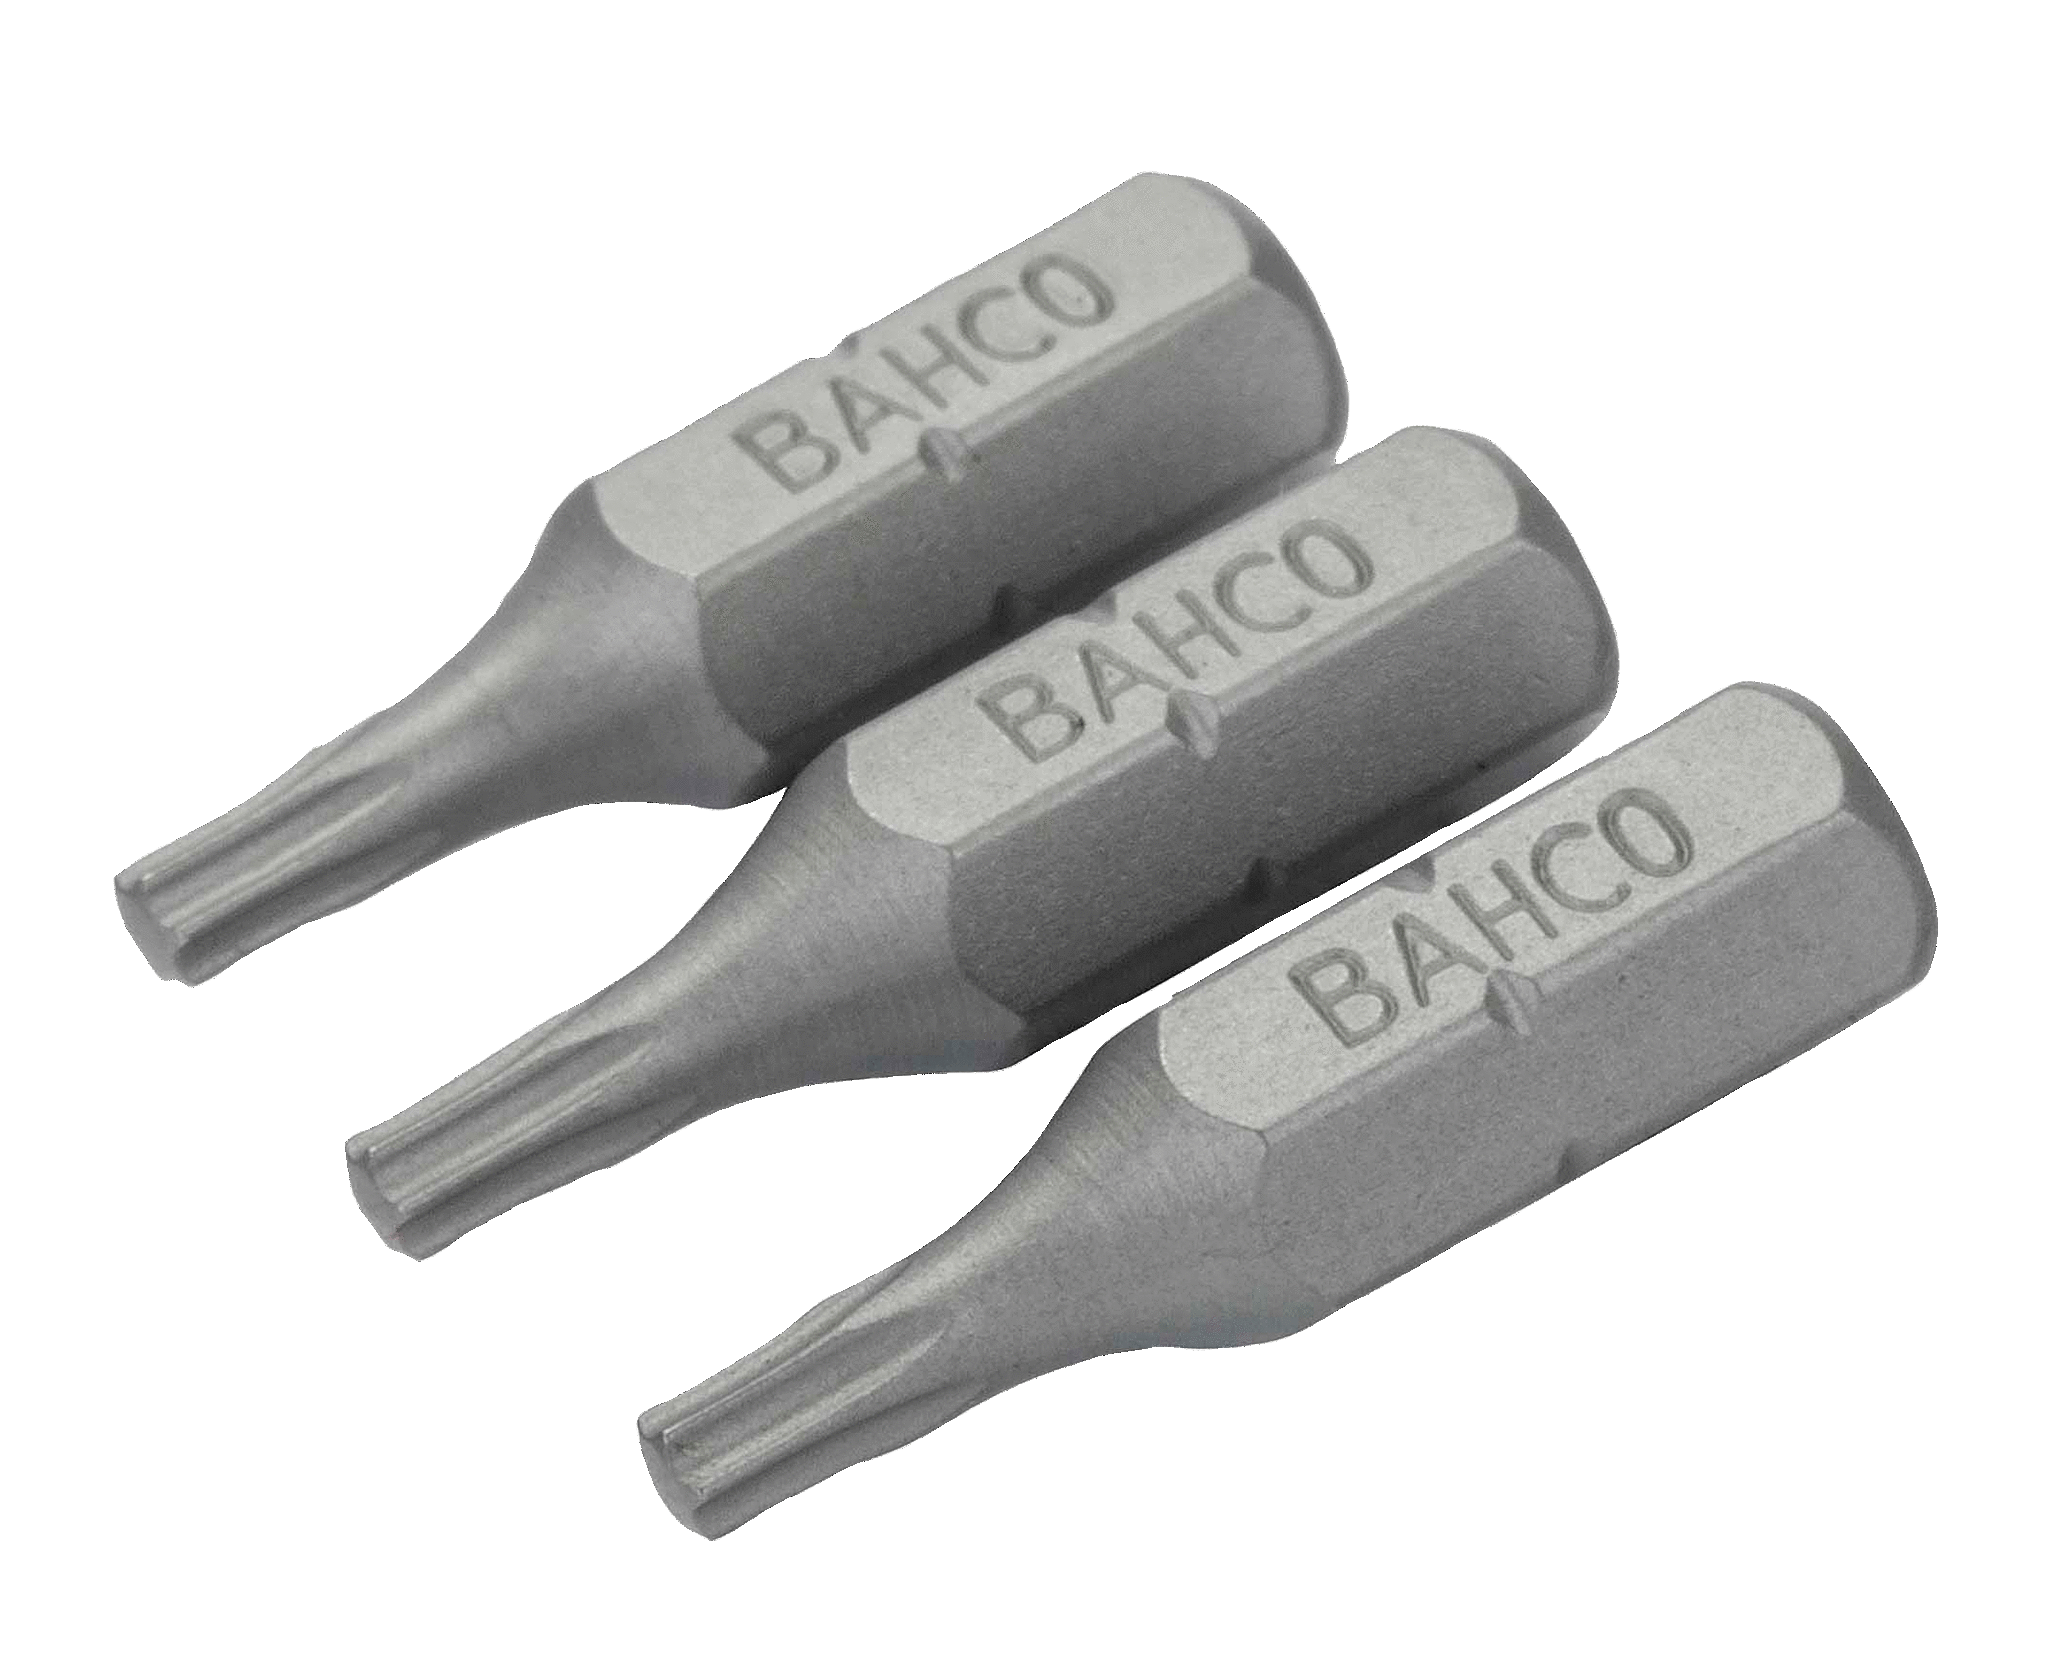 картинка Стандартные биты для отверток Torx®, 25 мм BAHCO 59S/T9 от магазина "Элит-инструмент"